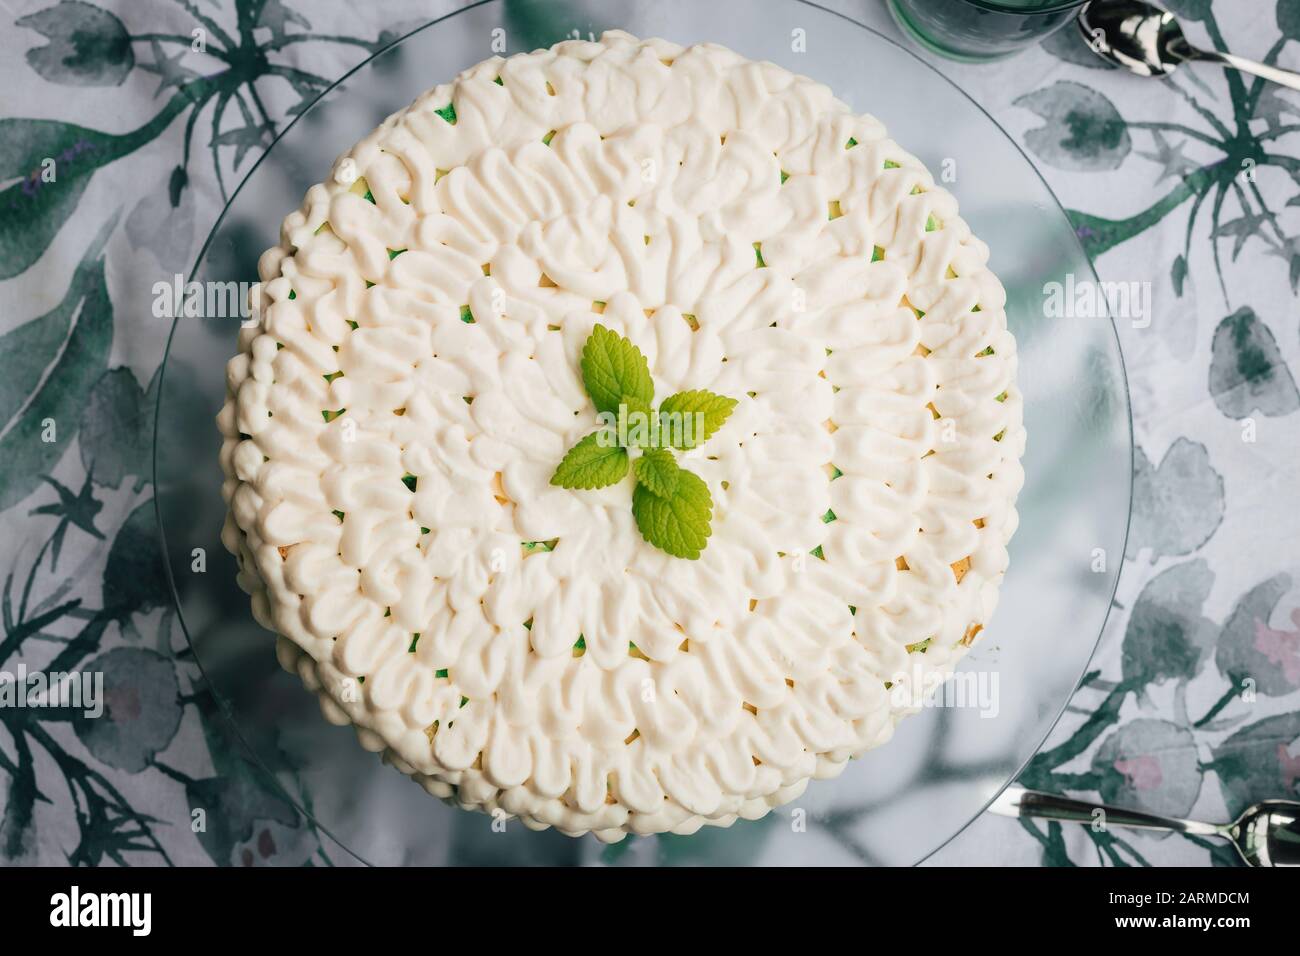 Vista superior de un pastel casero de queso de menta con glaseado blanco y hojas verdes de menta. Servido en un plato de vidrio. Foto de stock